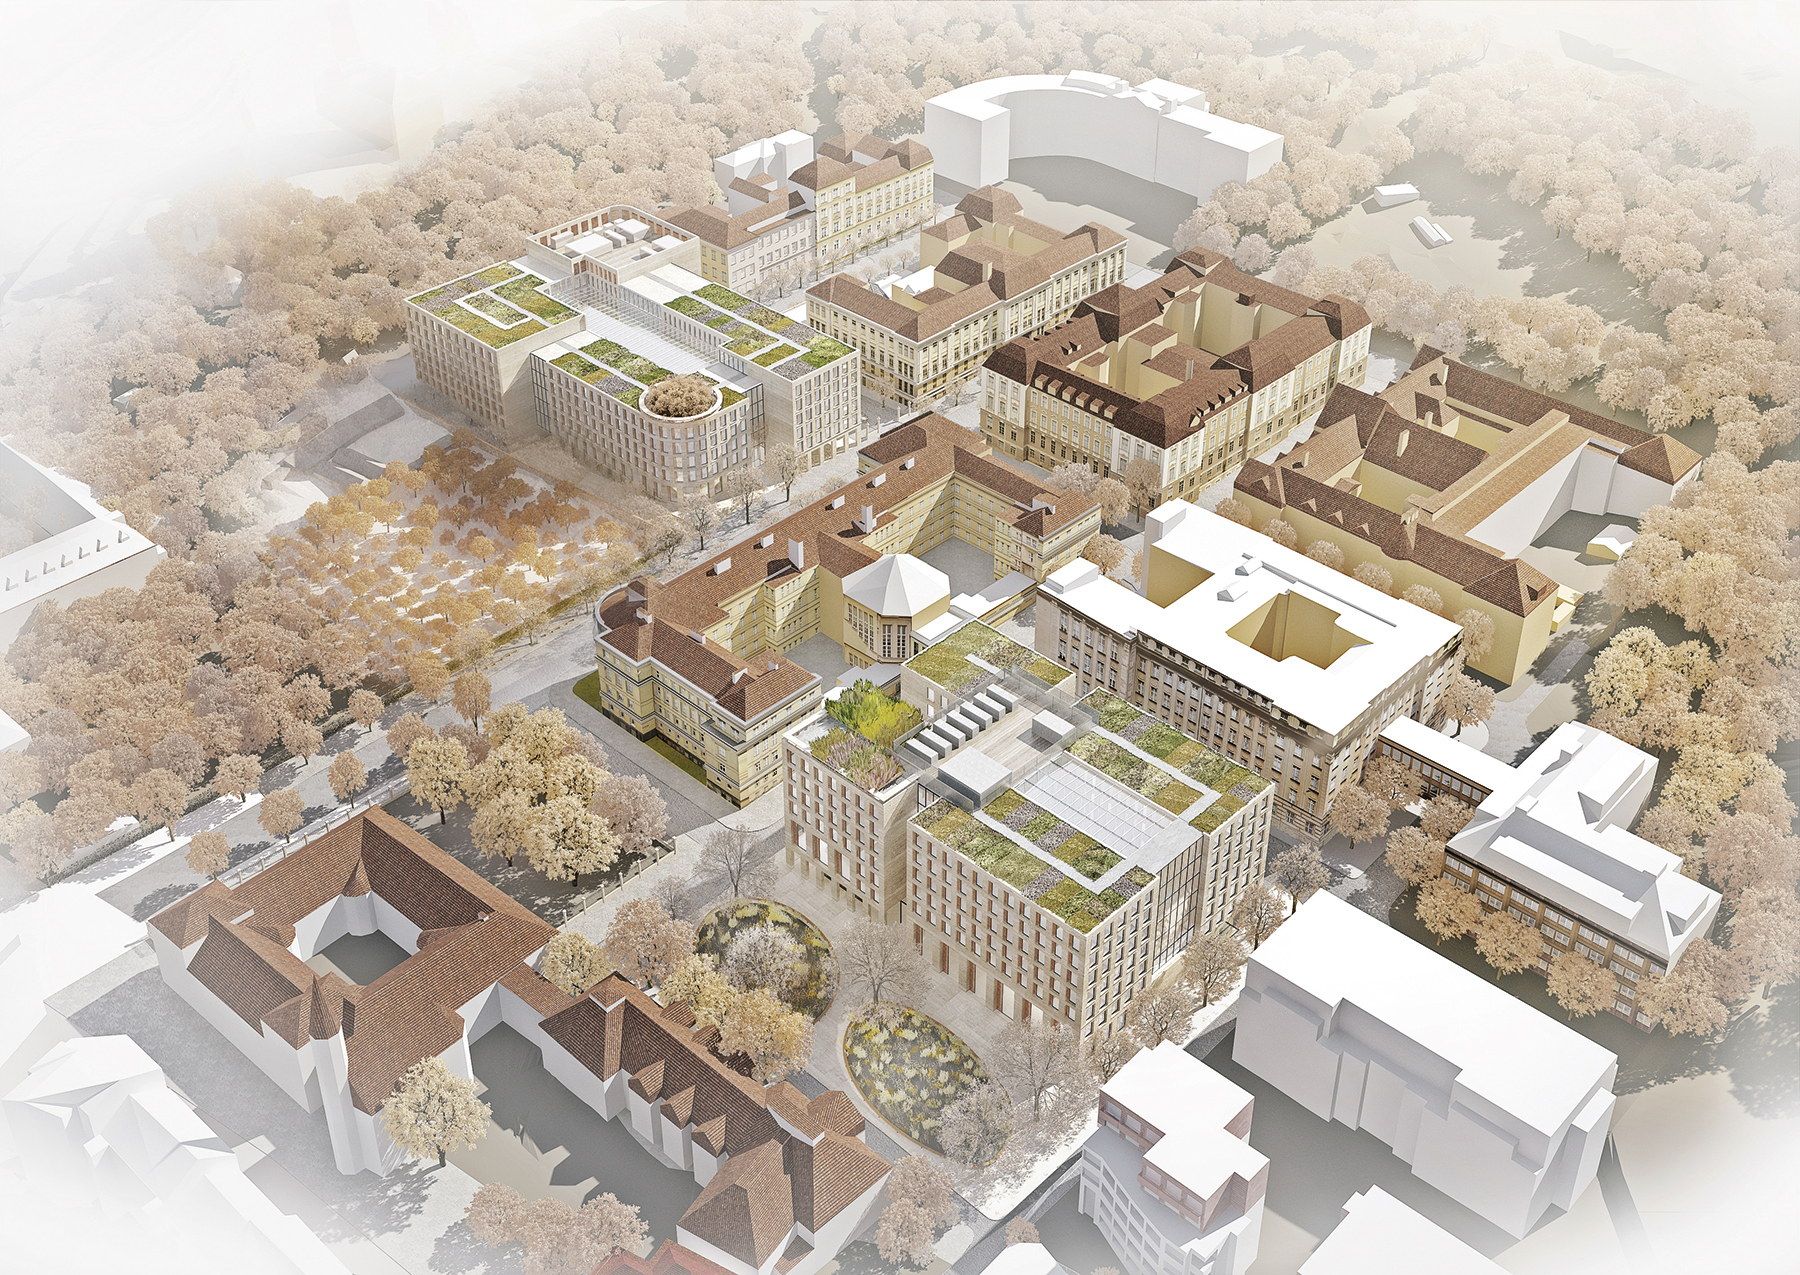 Kampus Univerzity Karlovy doplněný o dvě nová vědecká pracoviště